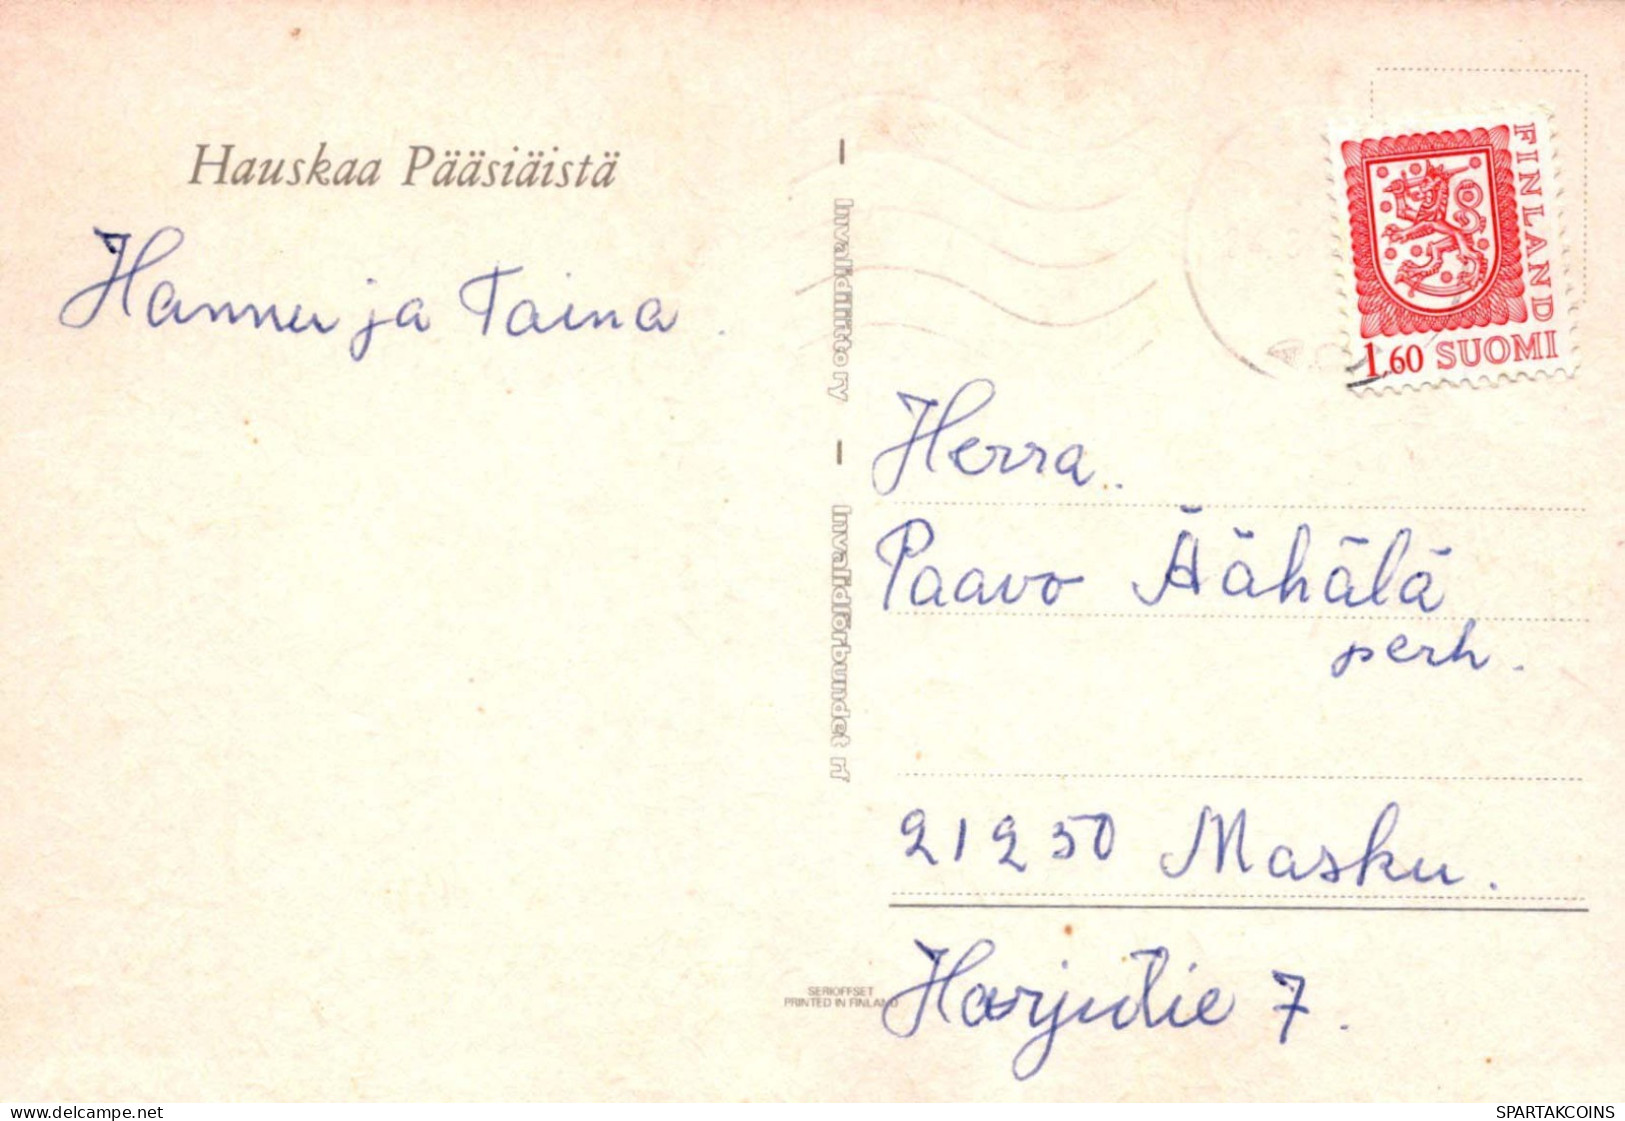 OSTERN KINDER Vintage Ansichtskarte Postkarte CPSM #PBO236.DE - Easter